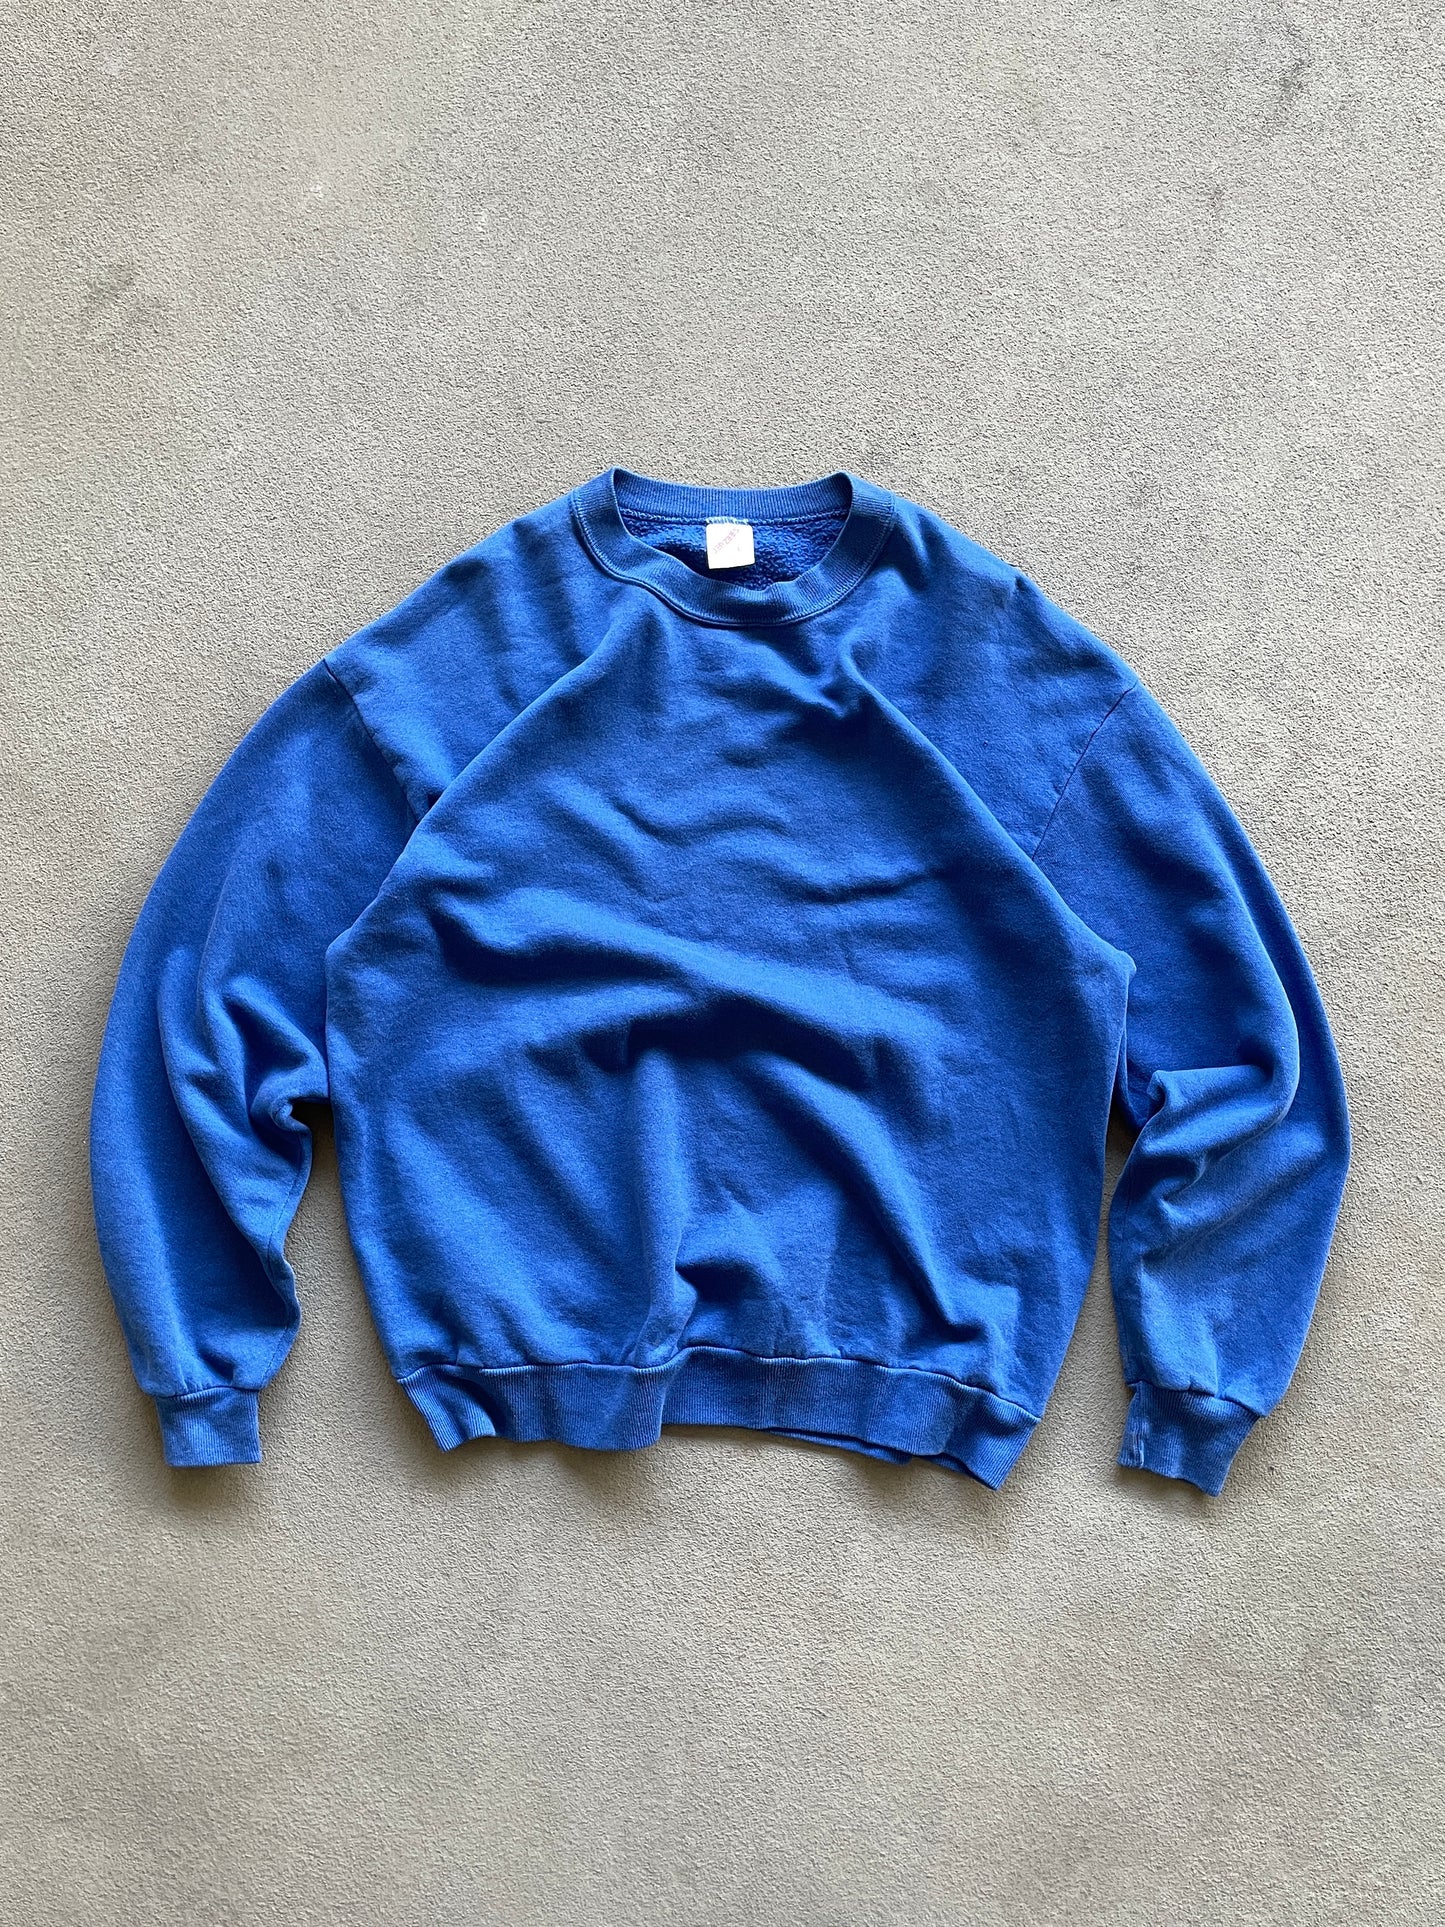 90s Royal Blue Jerzees Sweatshirt (Large) 1 pinhole non noticeable